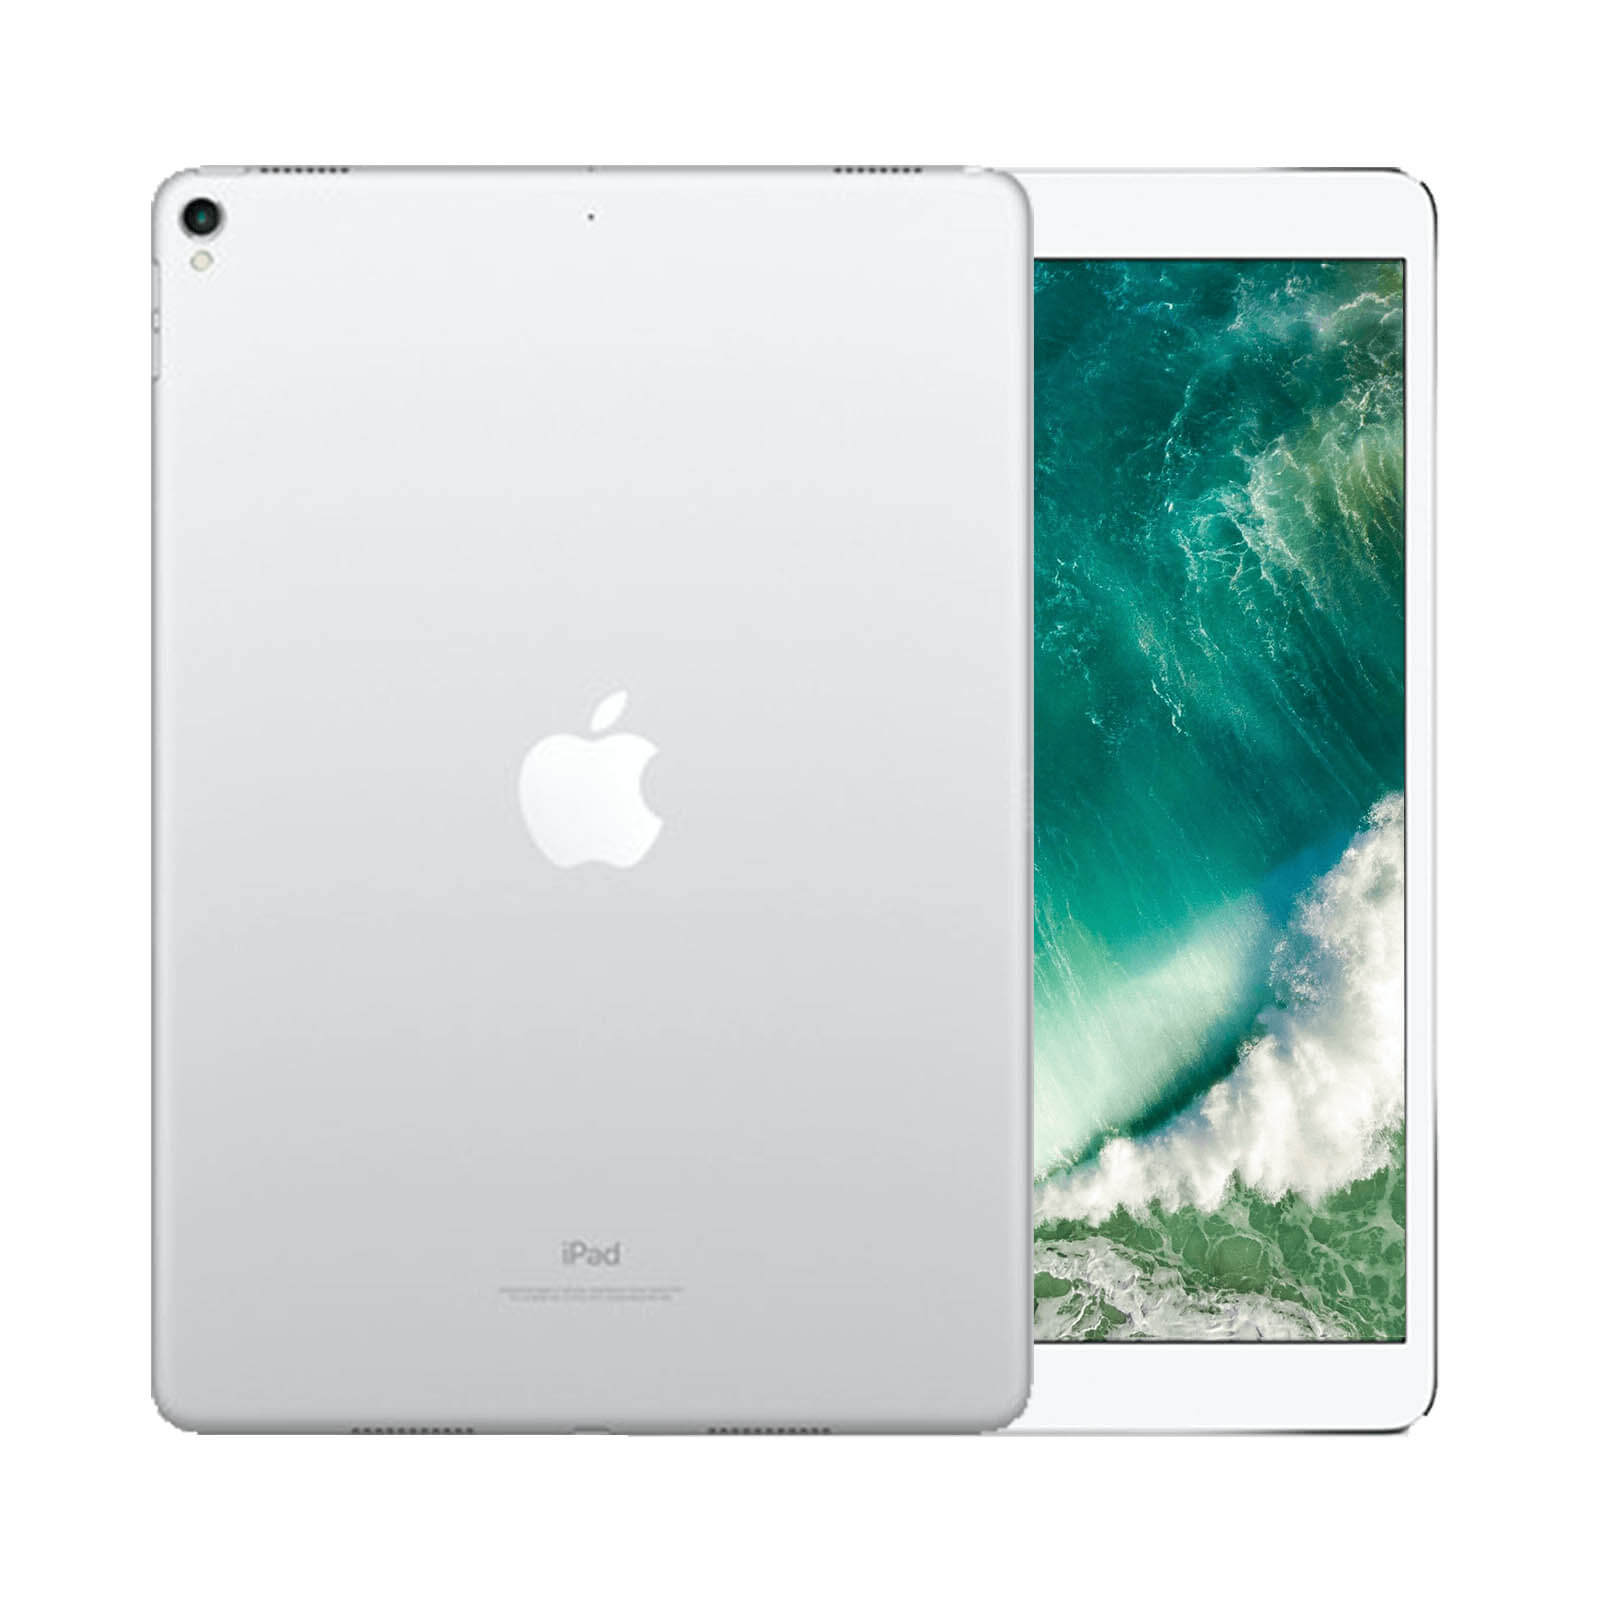 iPad Pro 11 Inch 512GB Space Grey Very Good - WiFi 512GB Space Grey Very Good